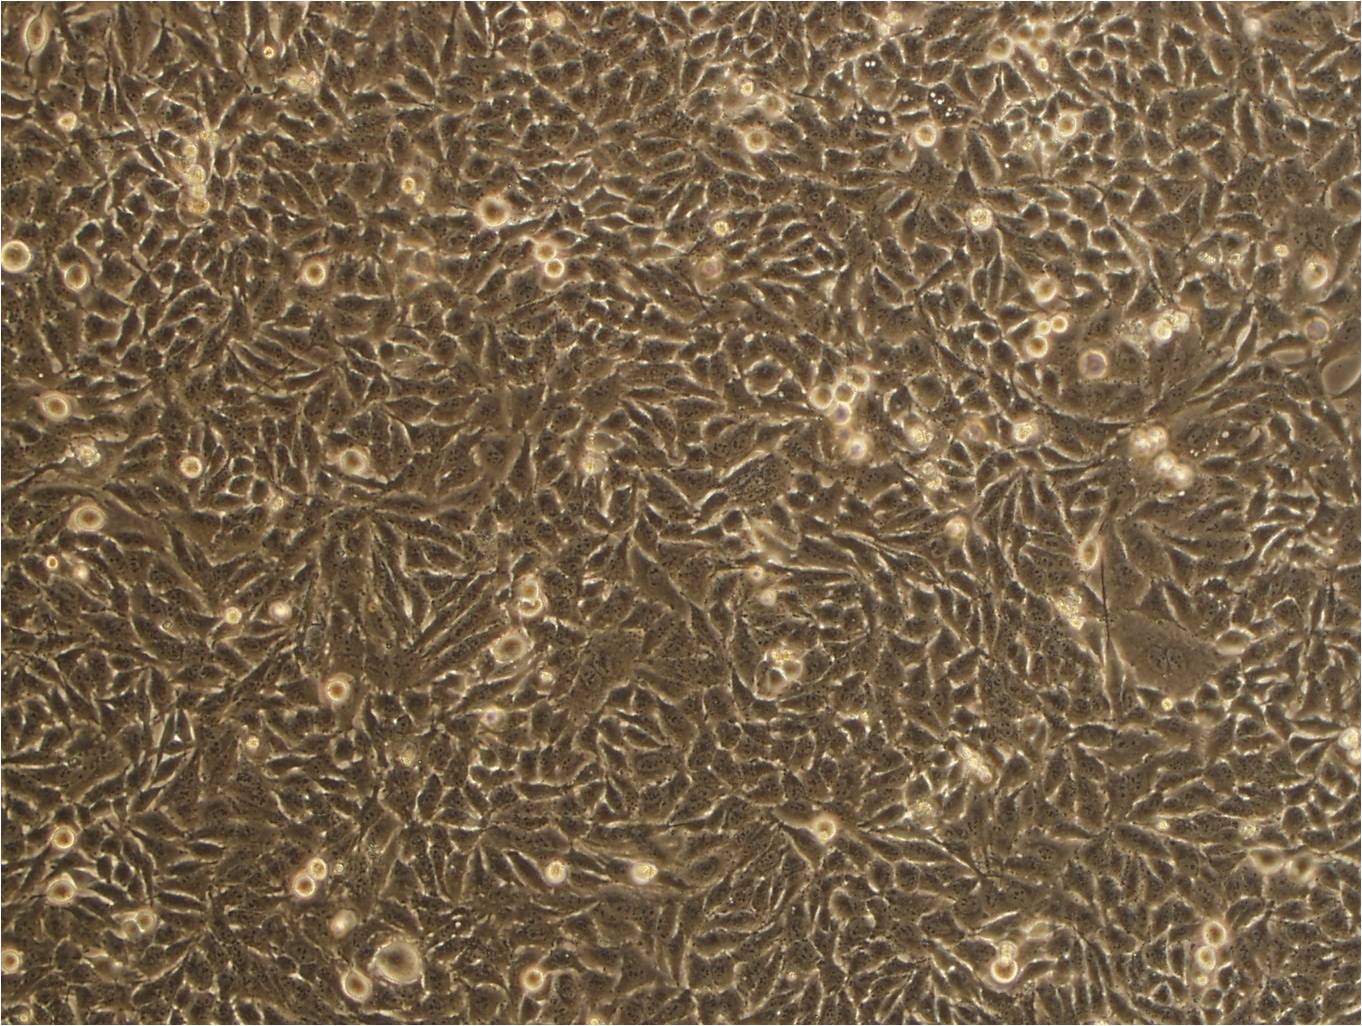 DU145细胞：人前列腺癌细胞系